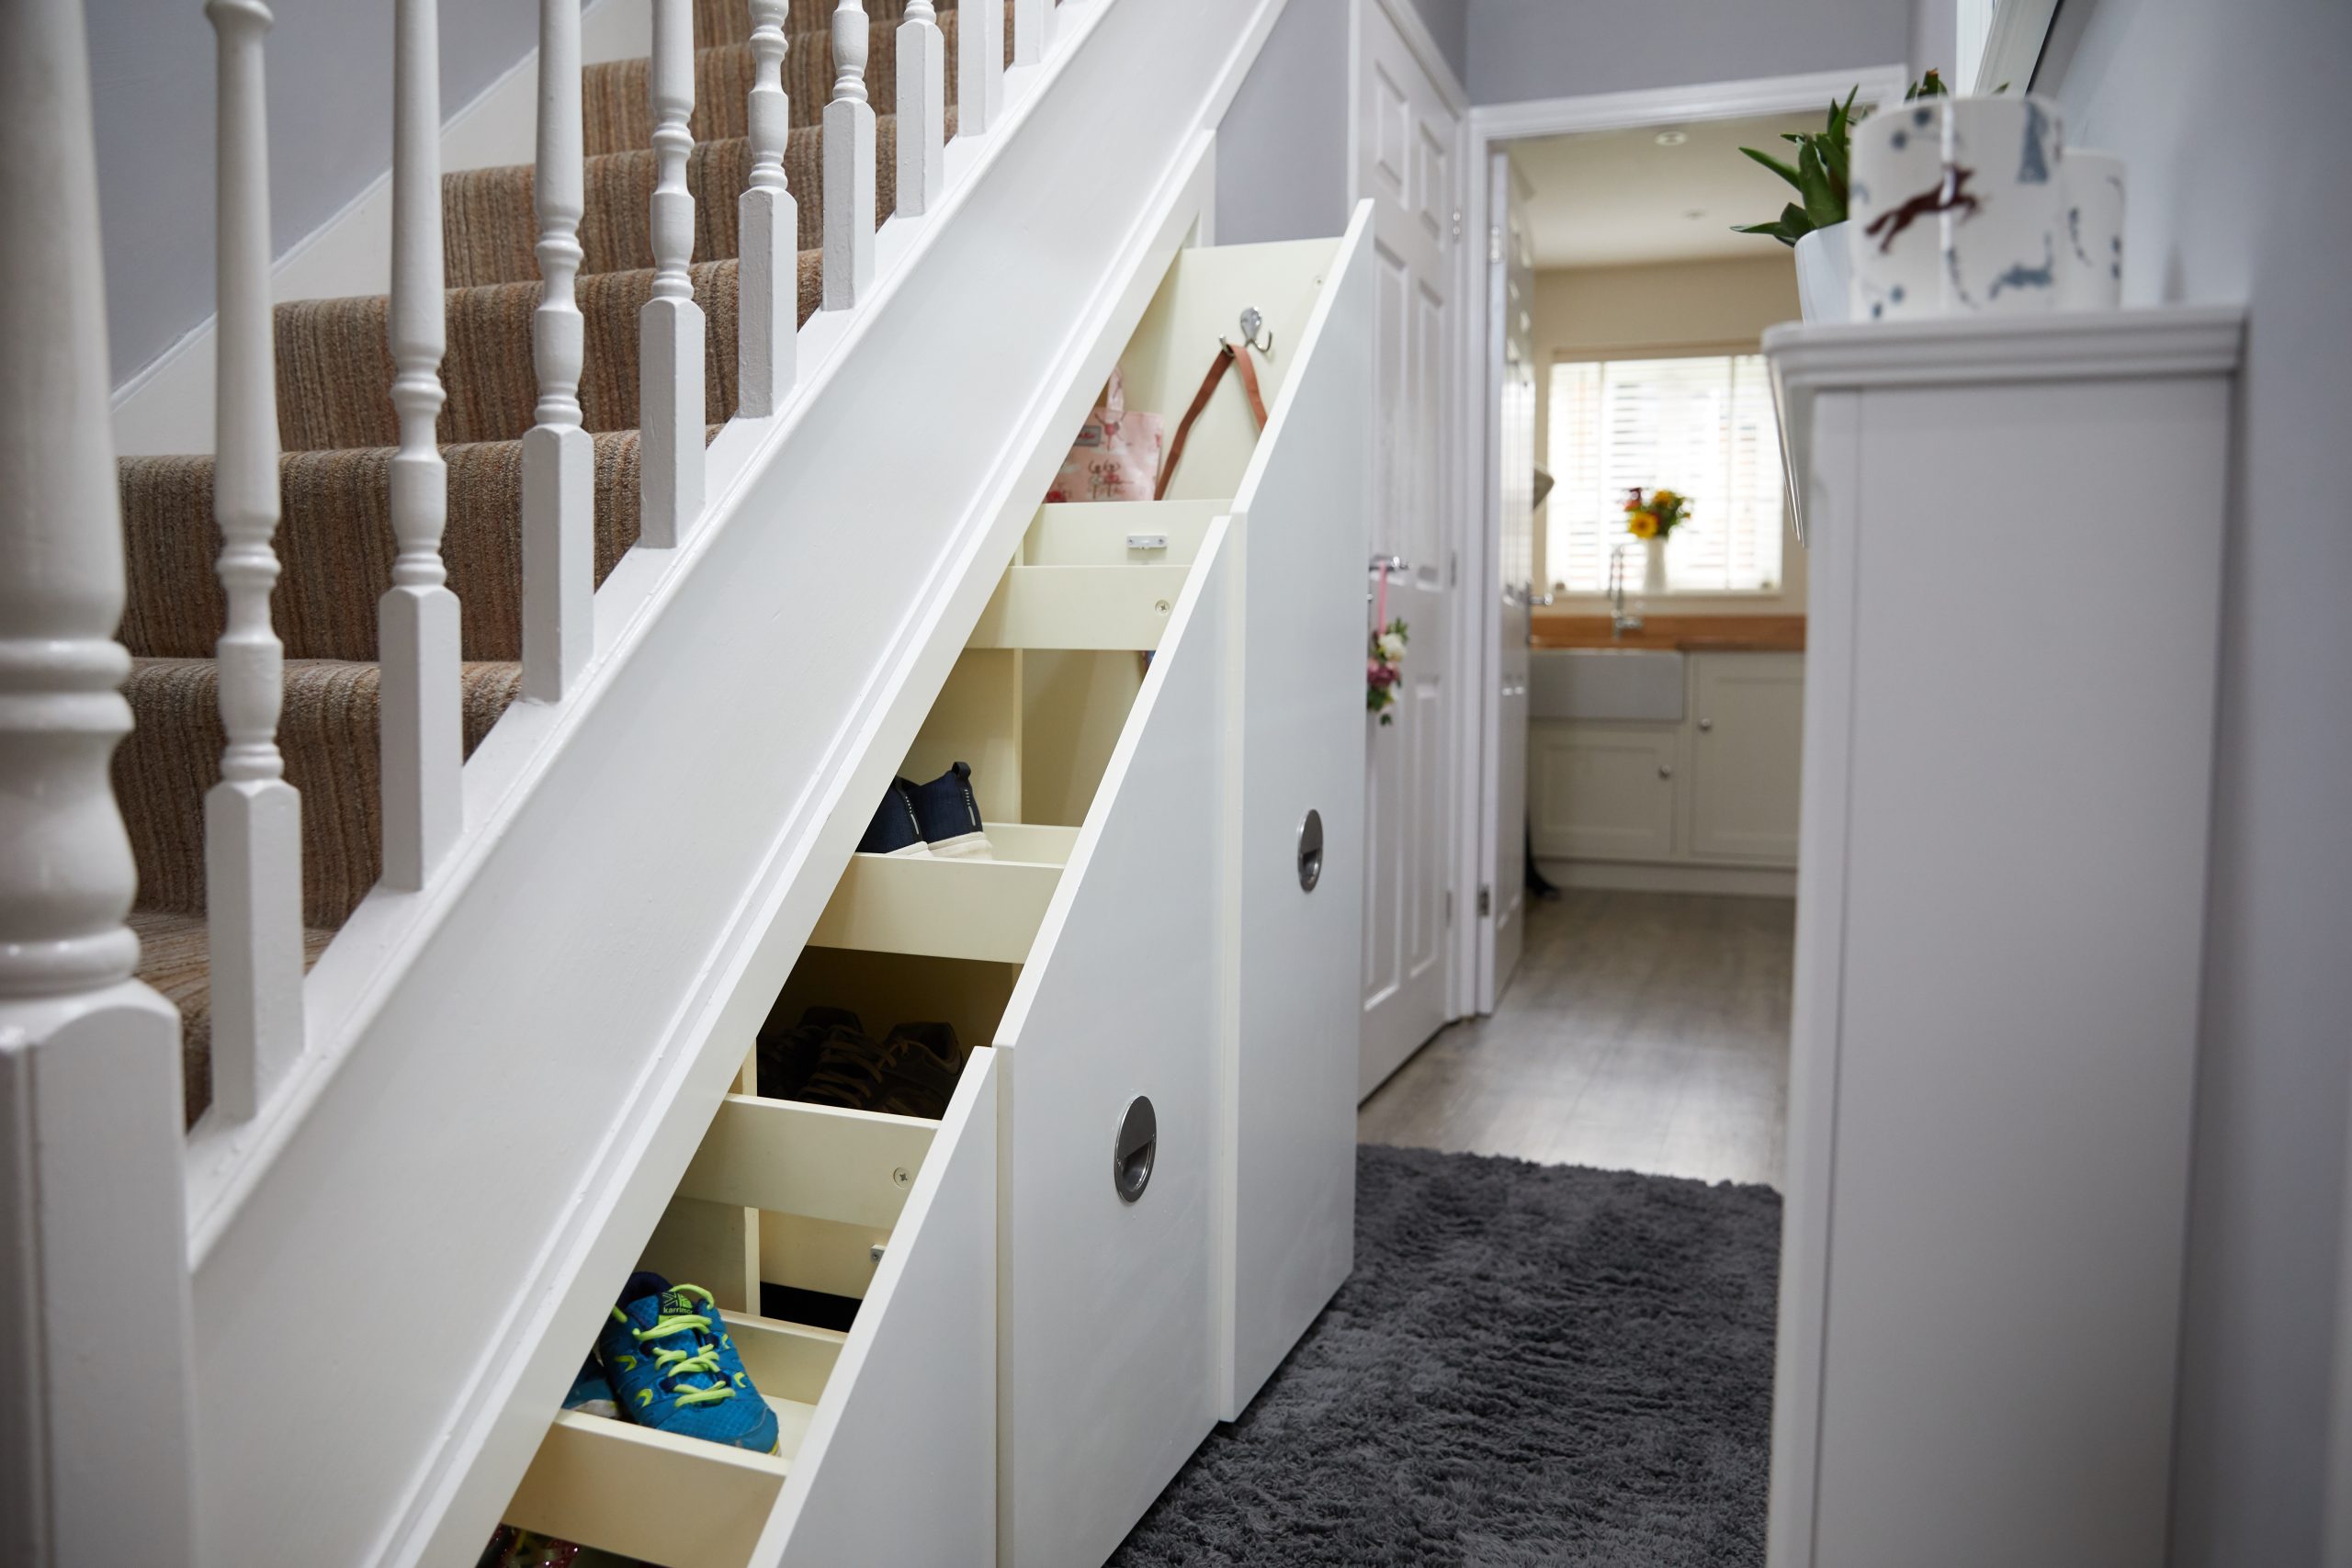 Under stairs storage · Fortschritt Bespoke Cabinetry